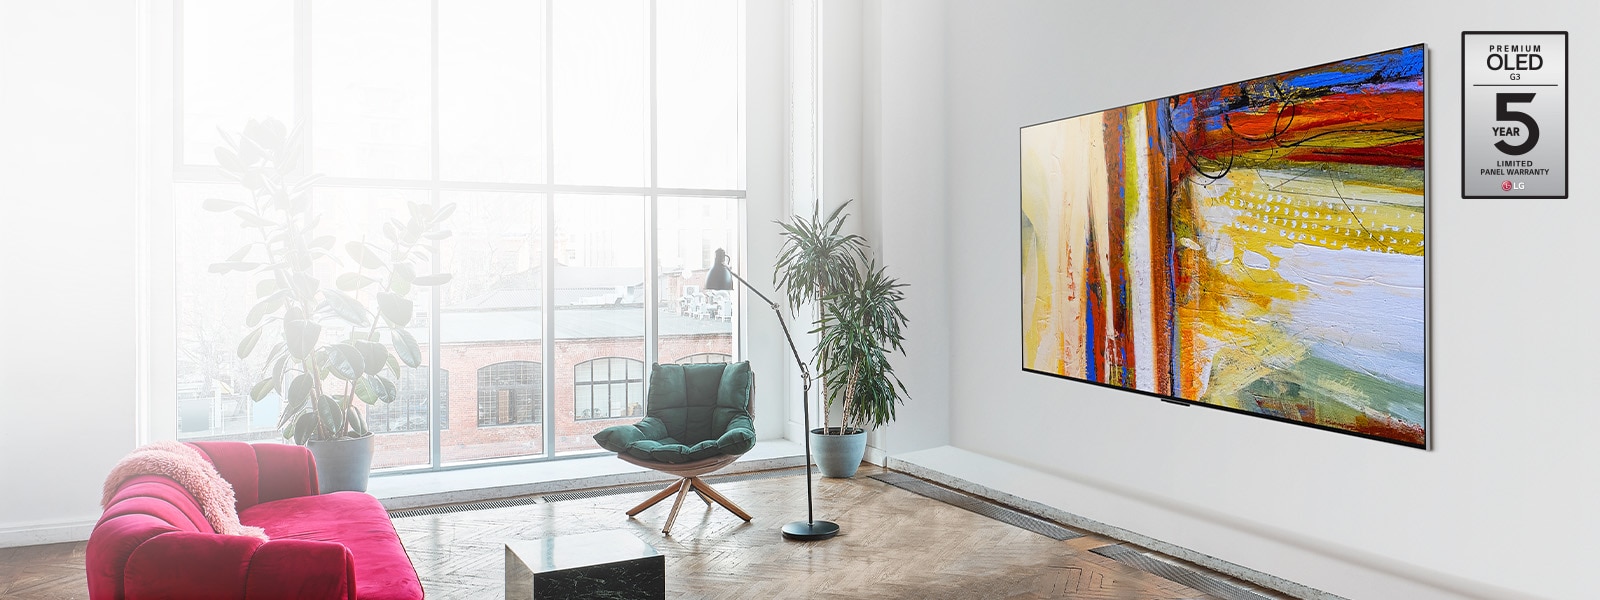 Slika LG OLED G3 z barvito abstraktno umetnino v svetli in živahni sobi.